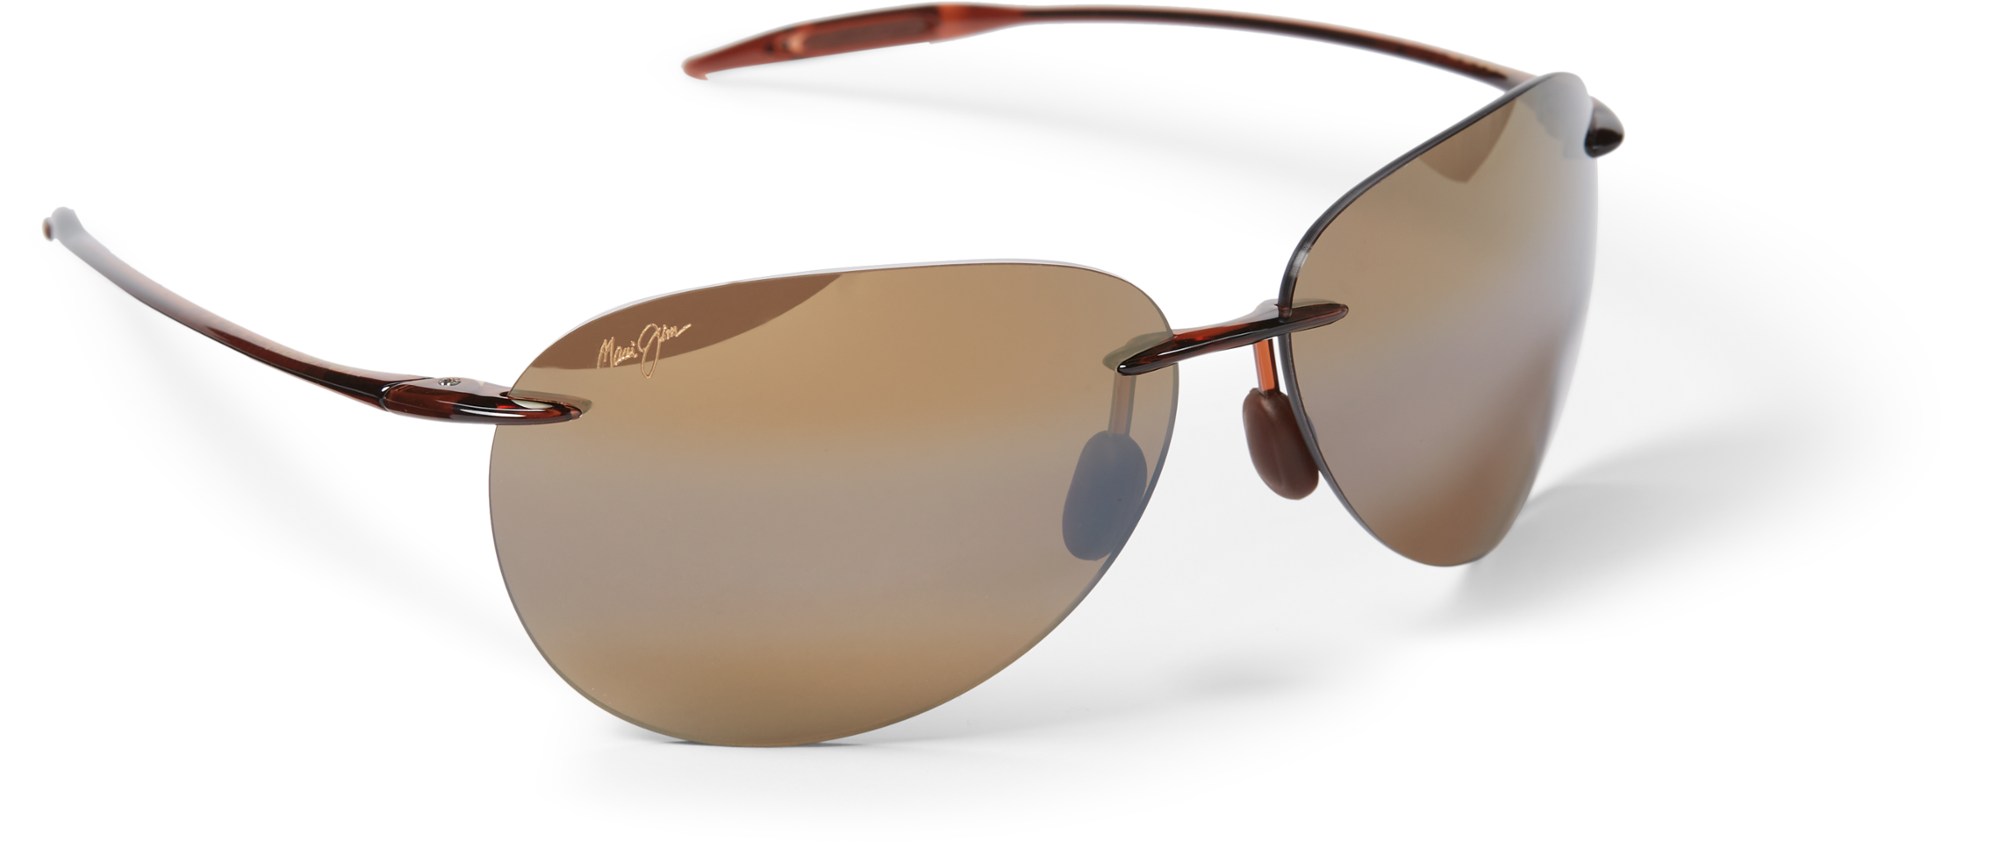 Поляризованные солнцезащитные очки Sugar Beach Maui Jim, коричневый